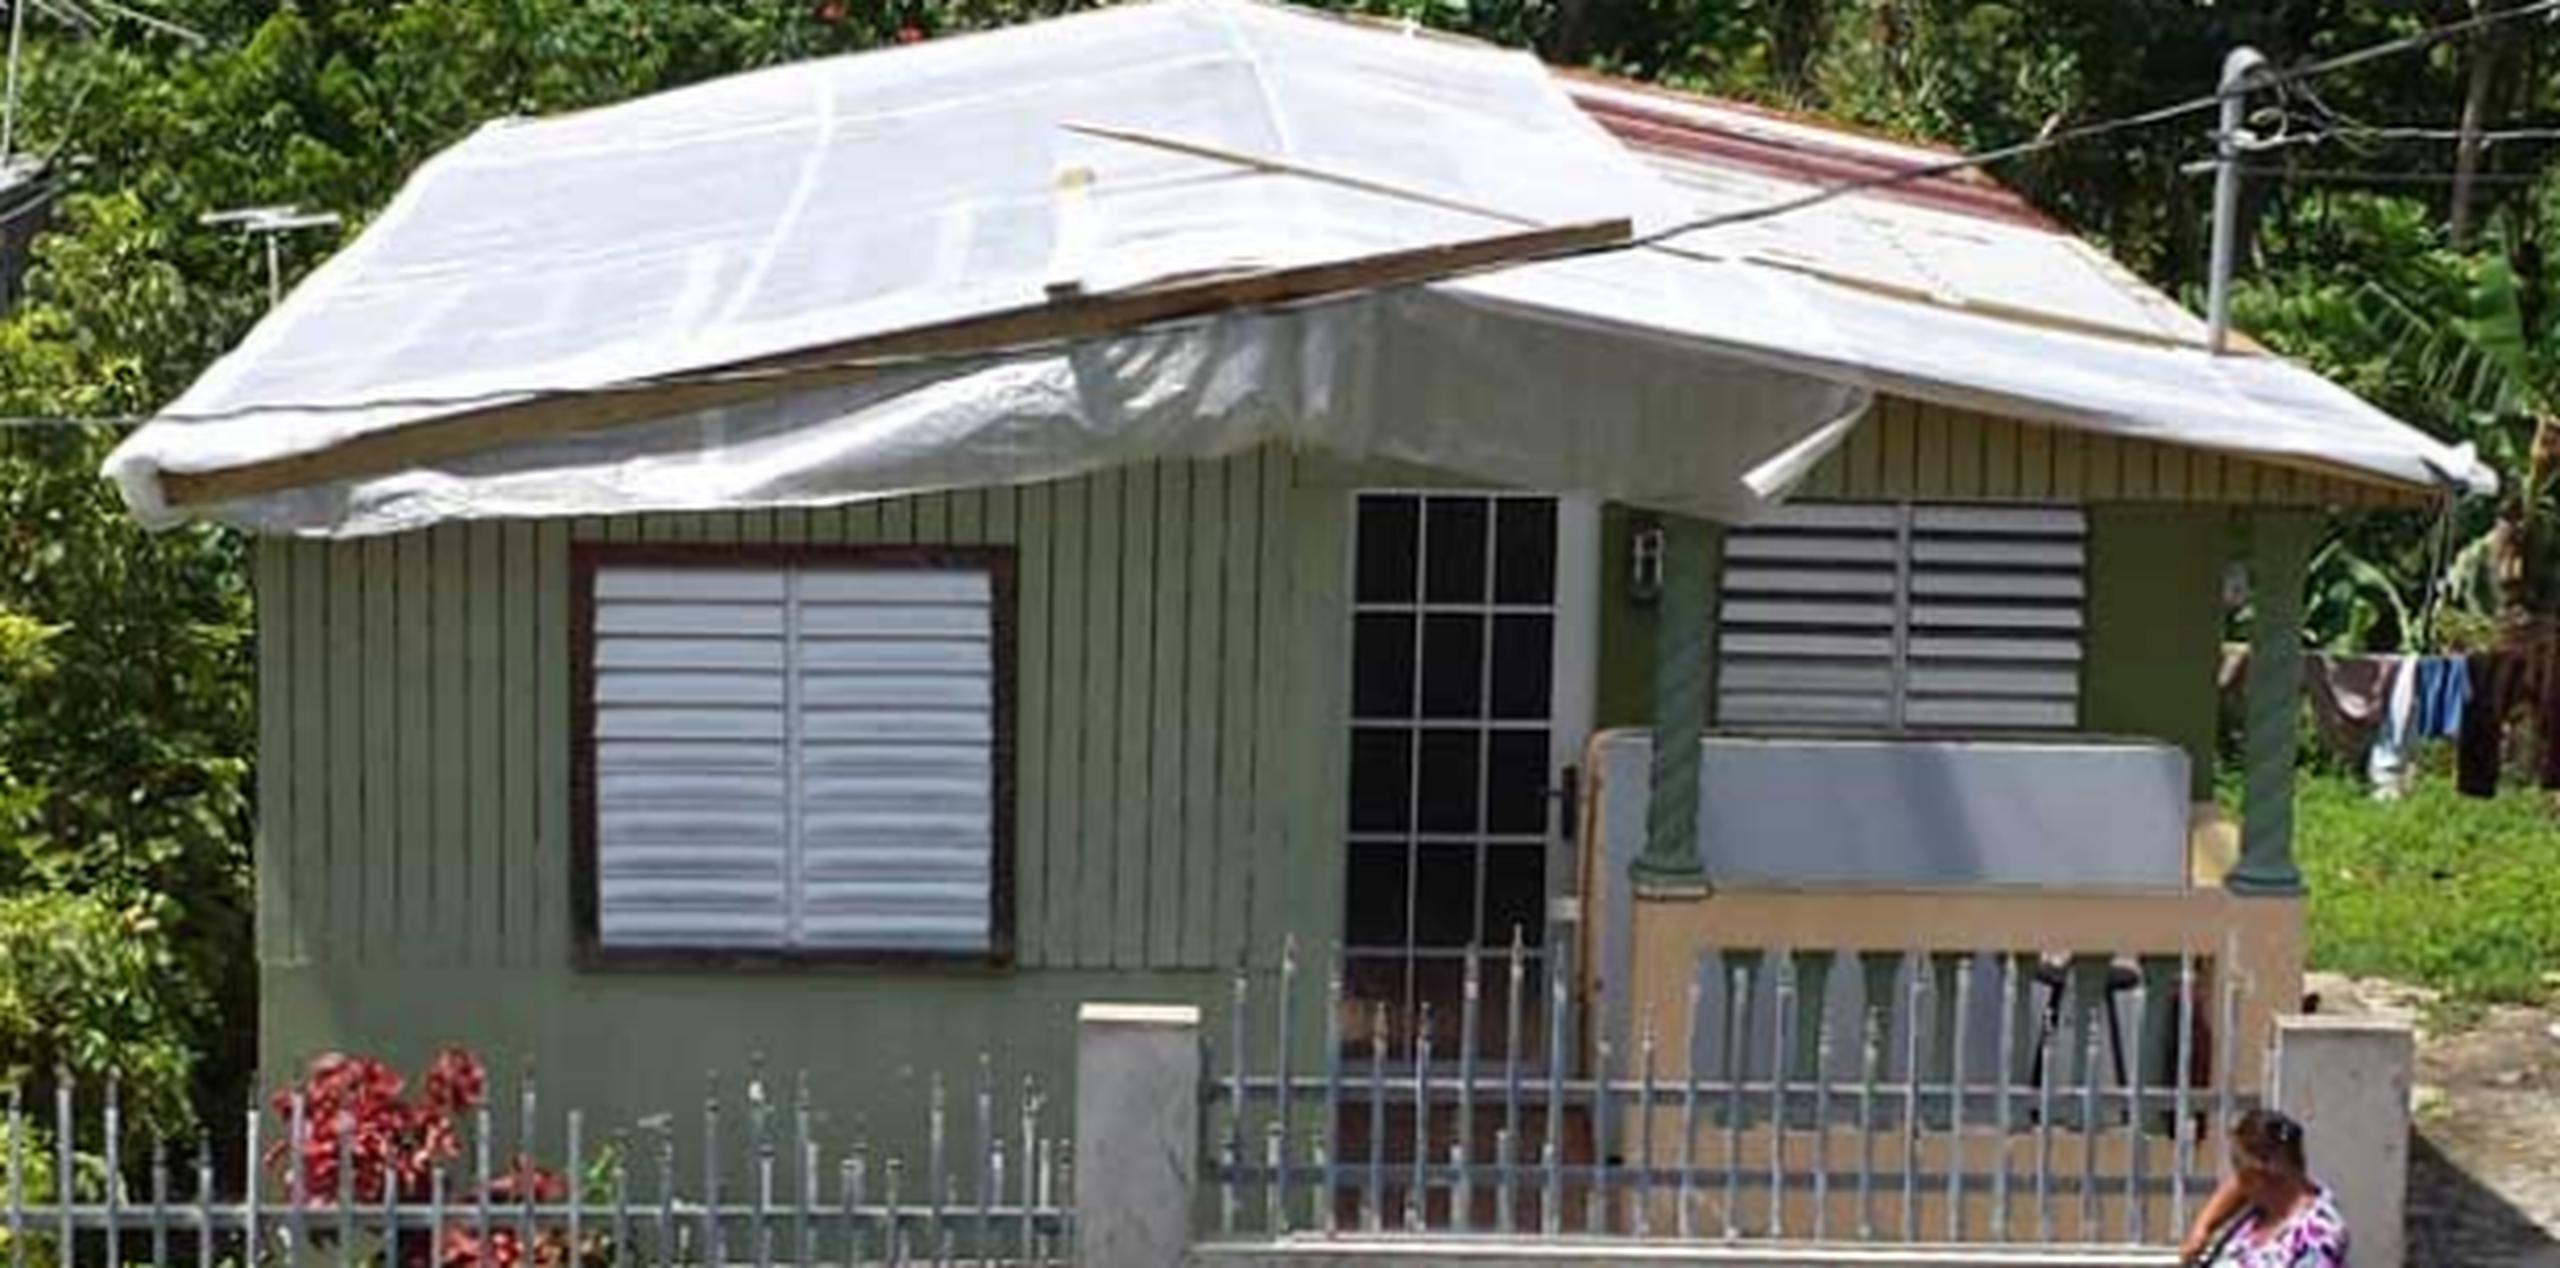 Las familias sin techo pernoctaron en casa de familiares. (tony.zayas@gfrmedia.com)